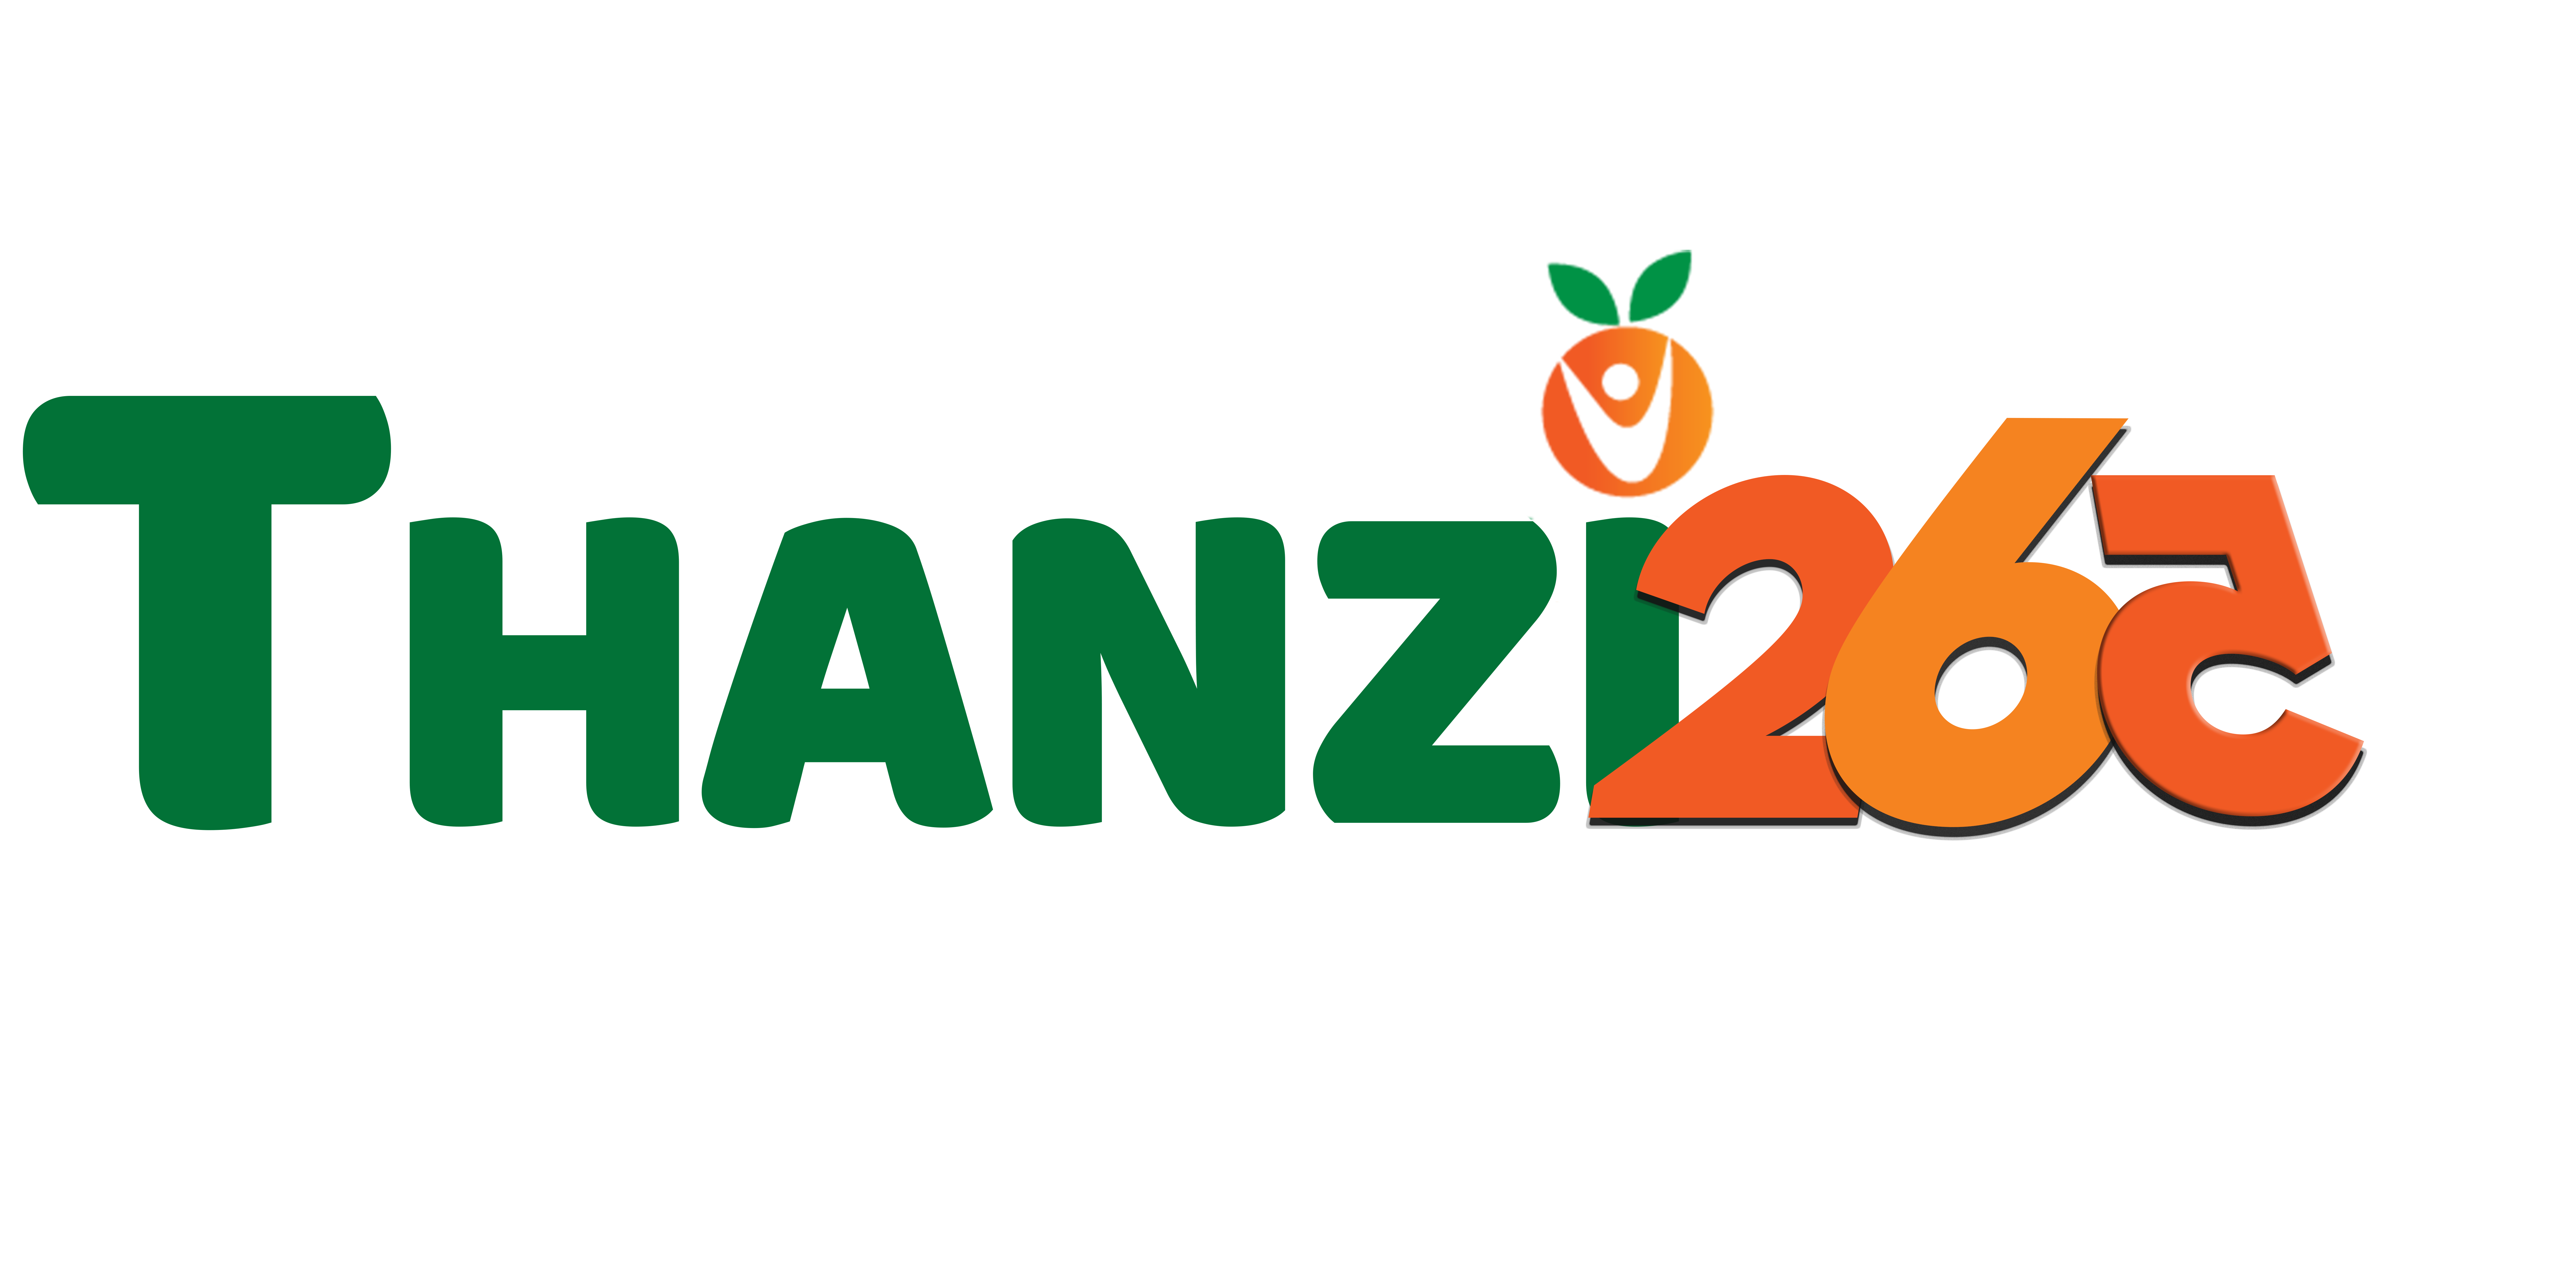 Thanzi 265 Logo